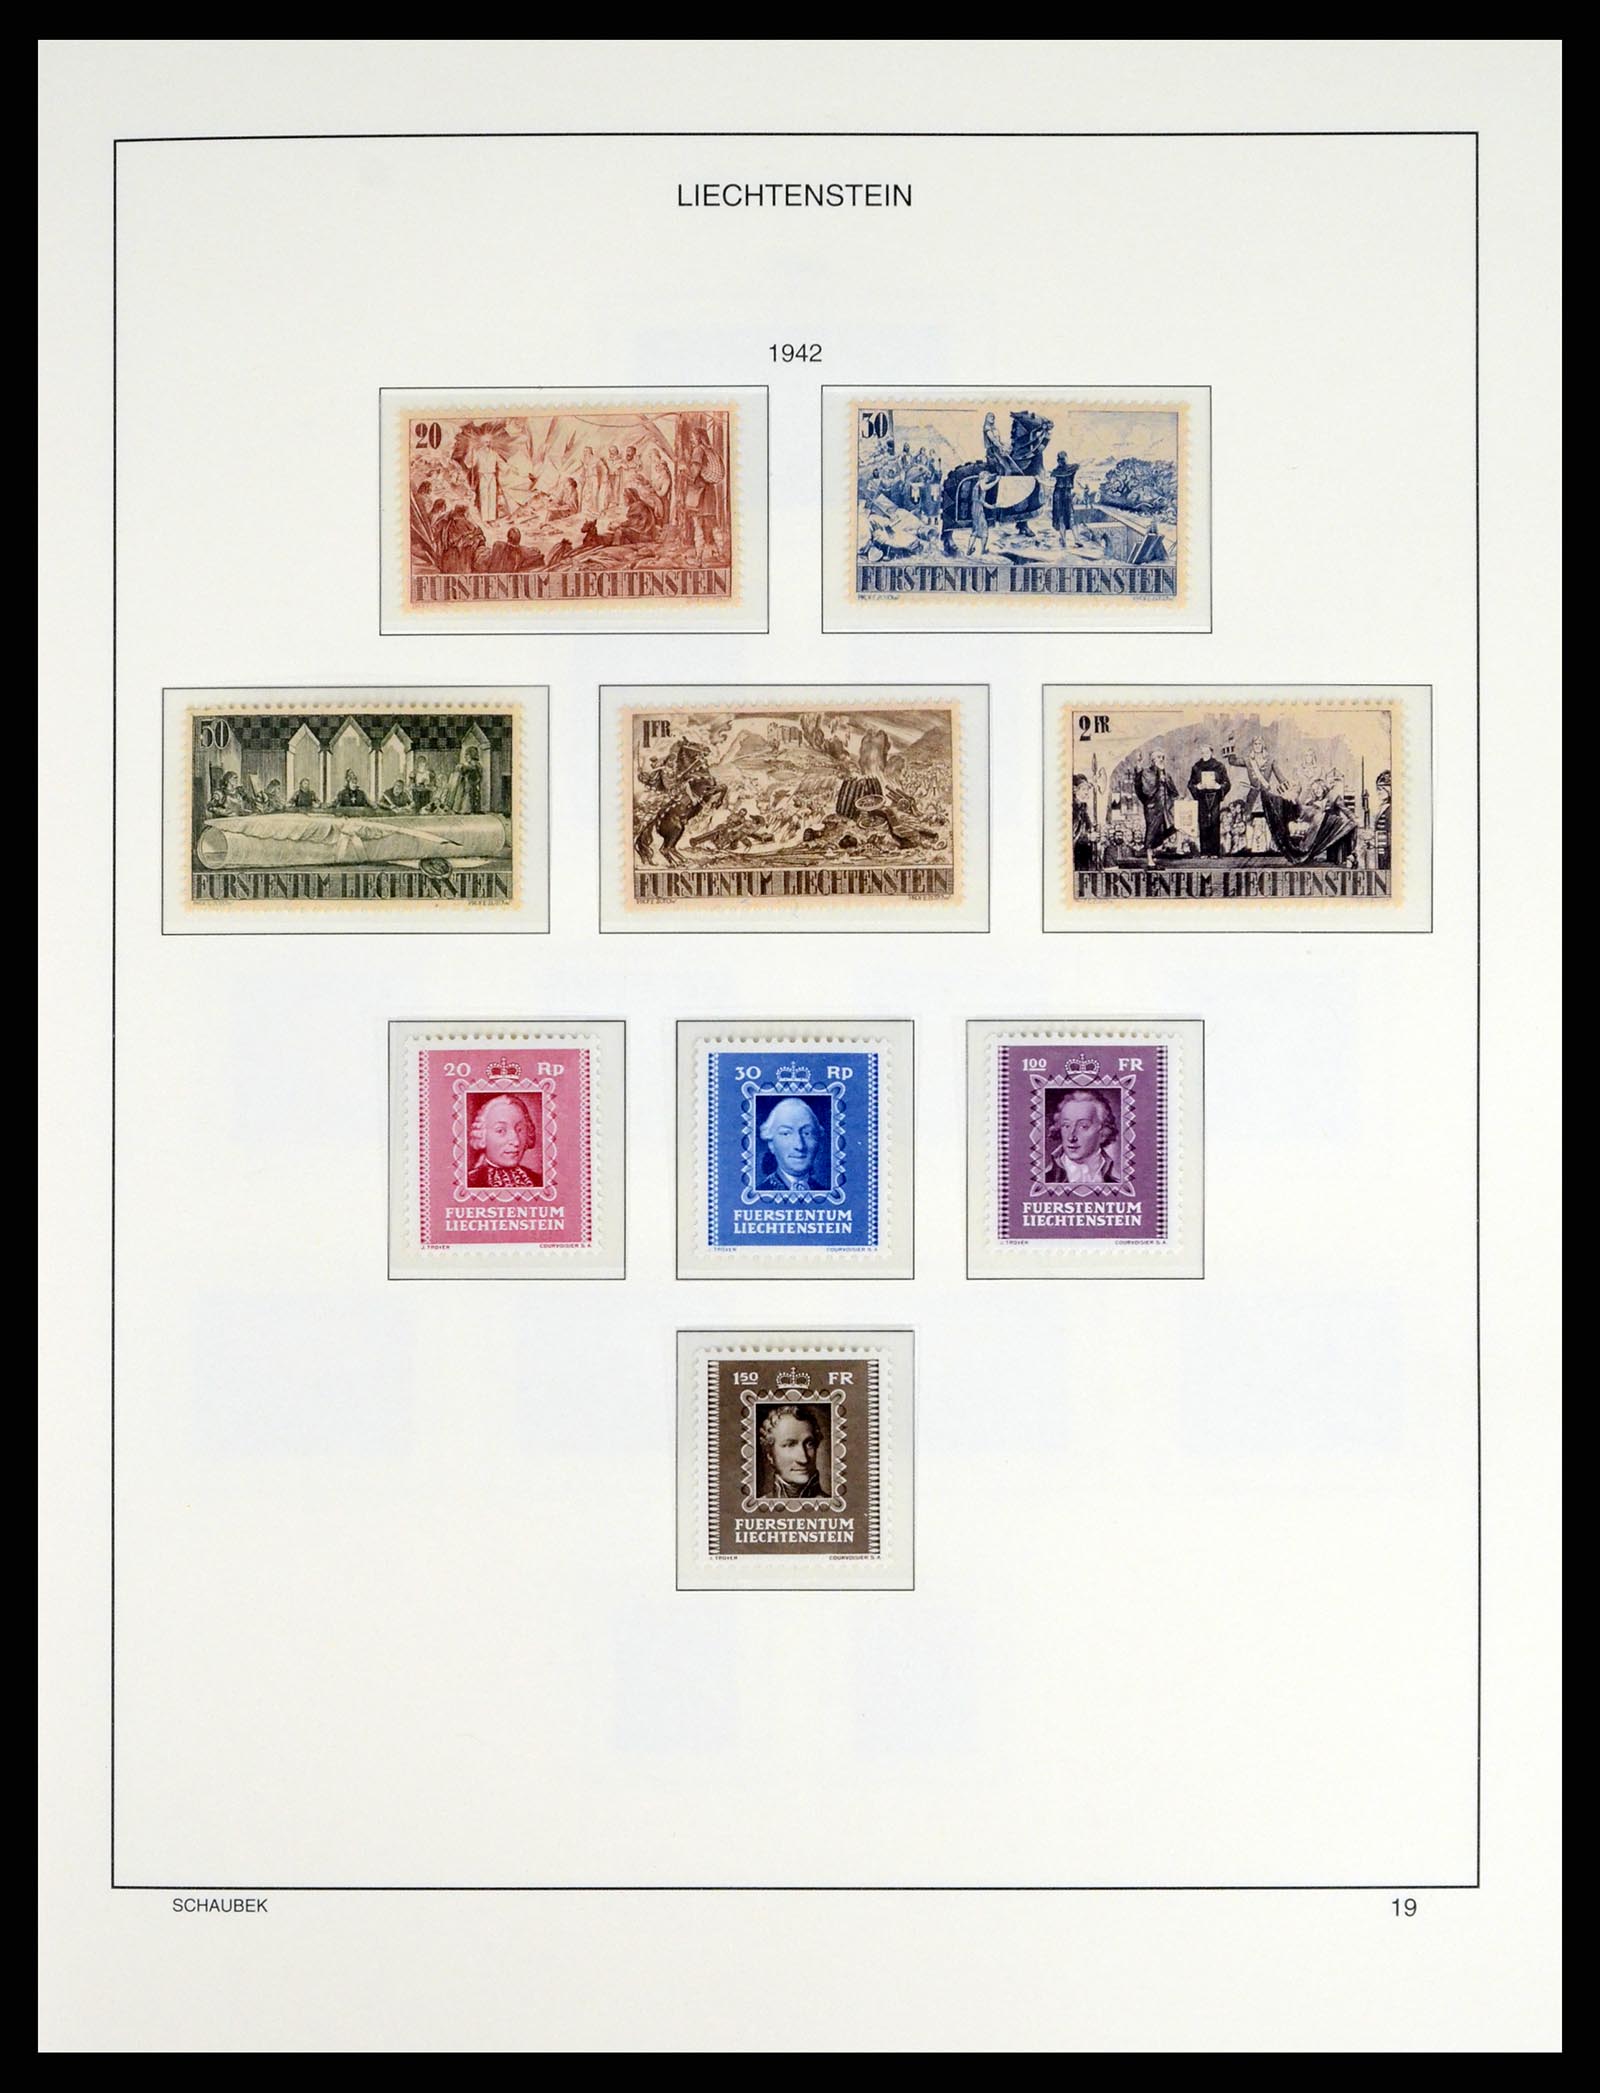 37547 022 - Stamp collection 37547 Liechtenstein 1912-2011.